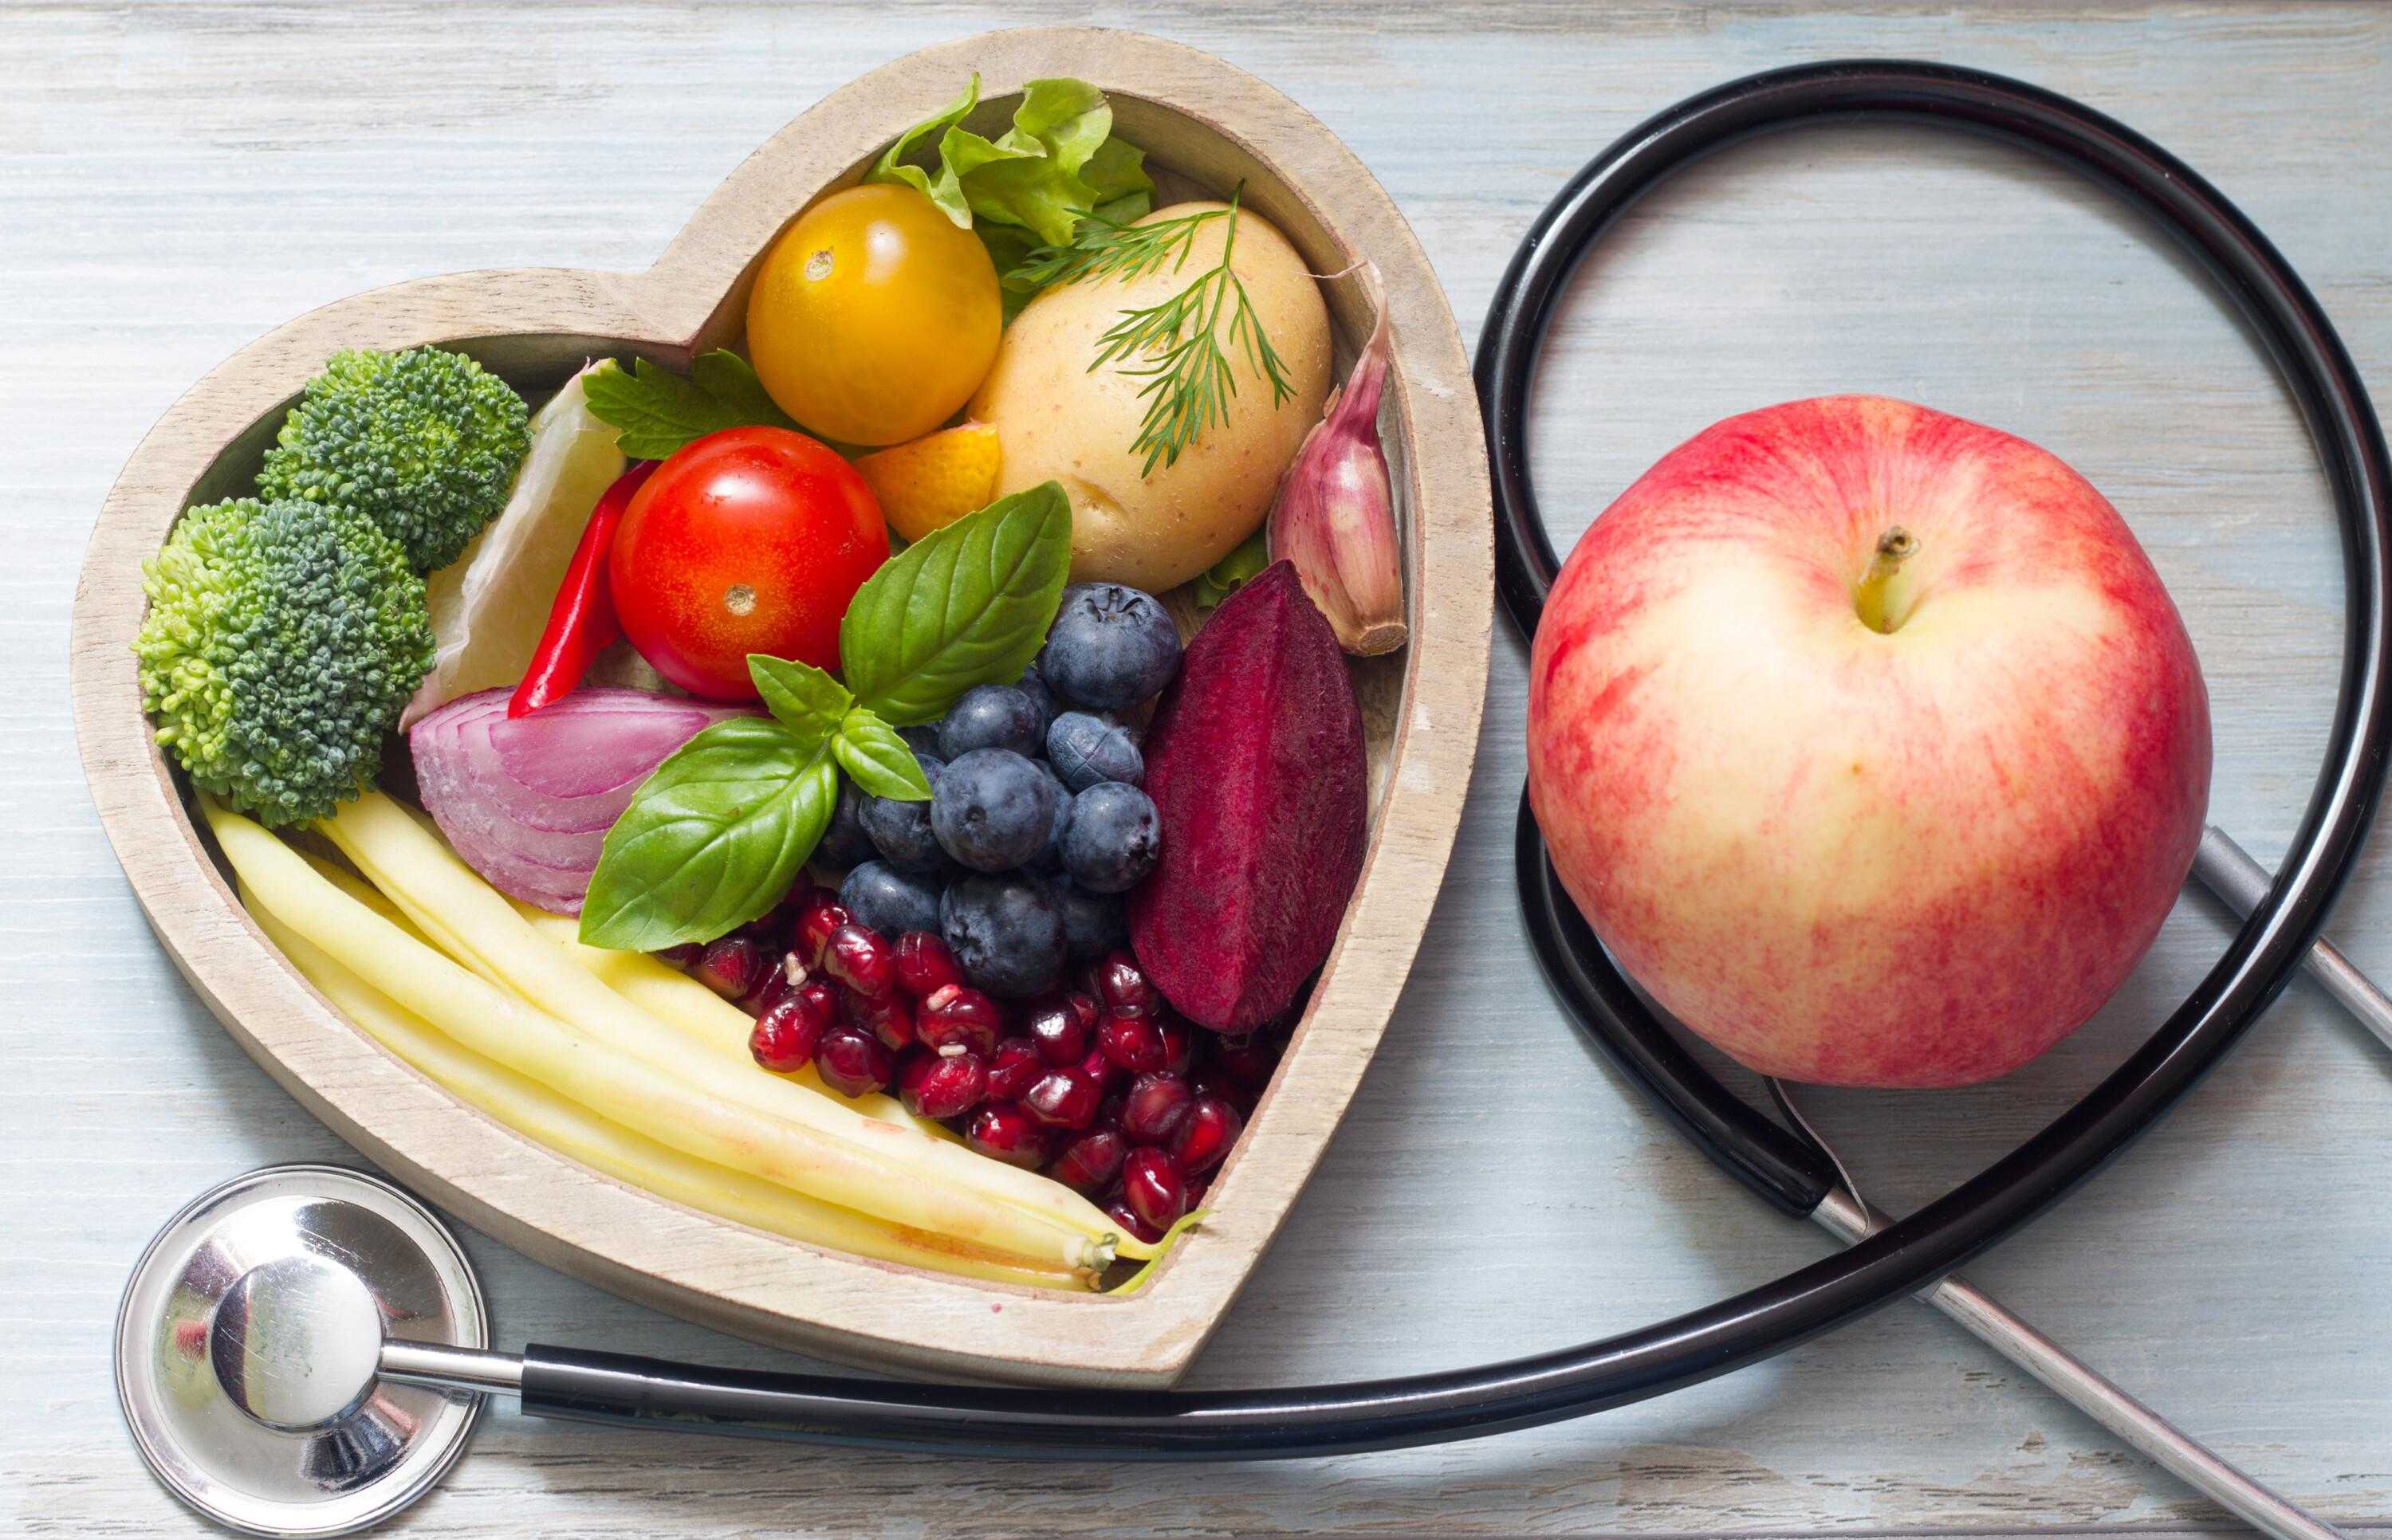 Мощные антиоксиданты в продуктах питания: таблица овощей, фруктов